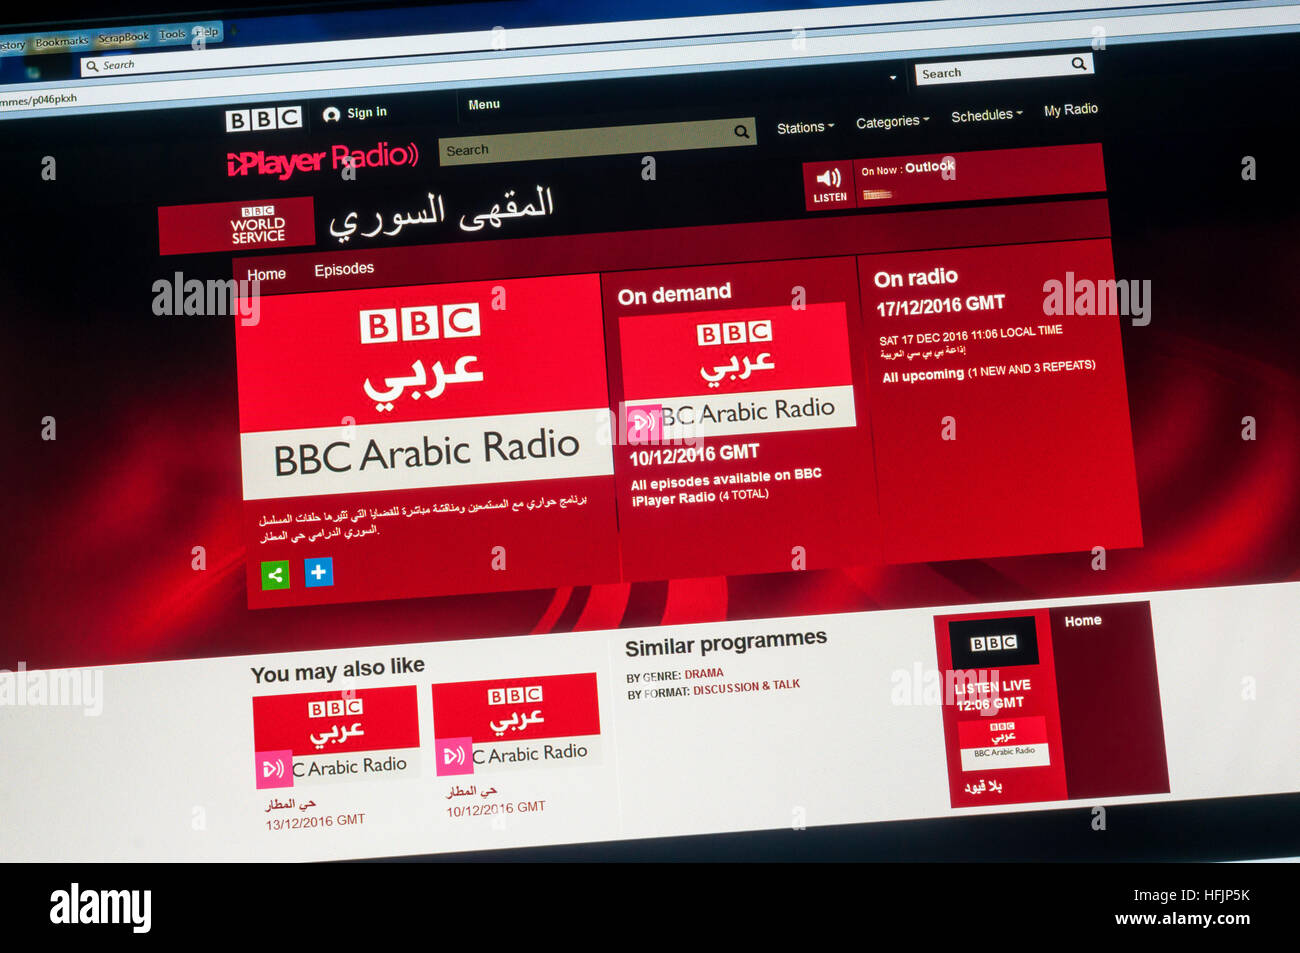 Bbc arabic radio Banque de photographies et d'images à haute résolution -  Alamy